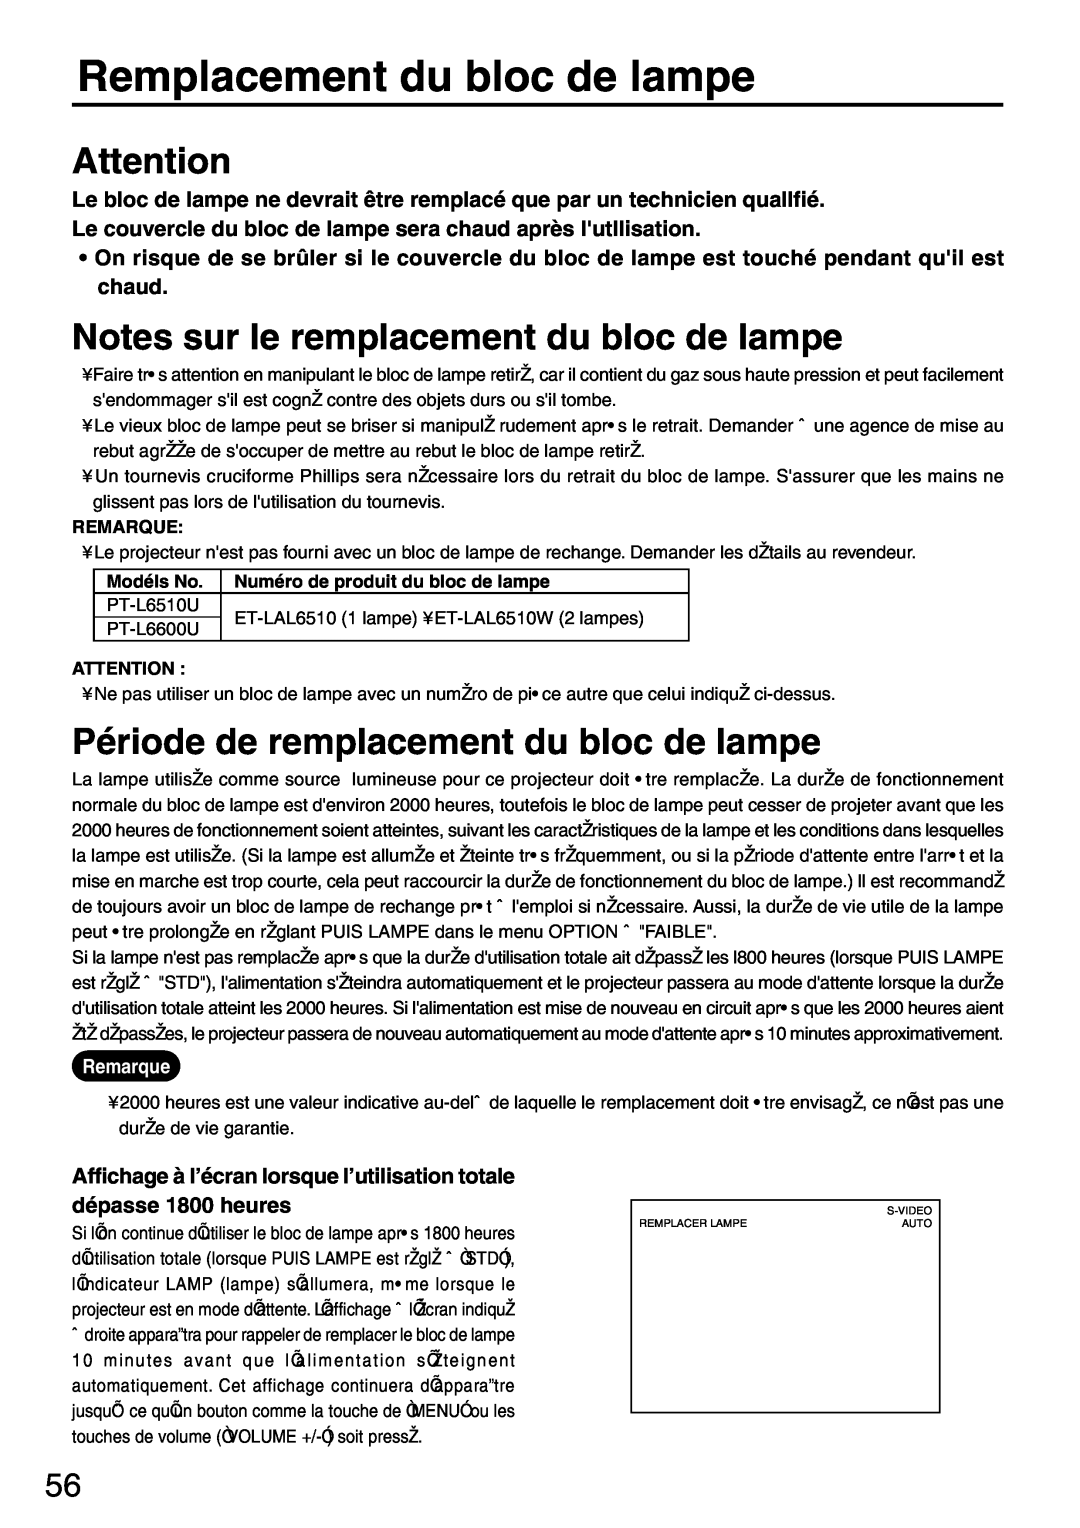 Panasonic PT-L6510U manual Remplacement du bloc de lampe, Notes sur le remplacement du bloc de lampe 